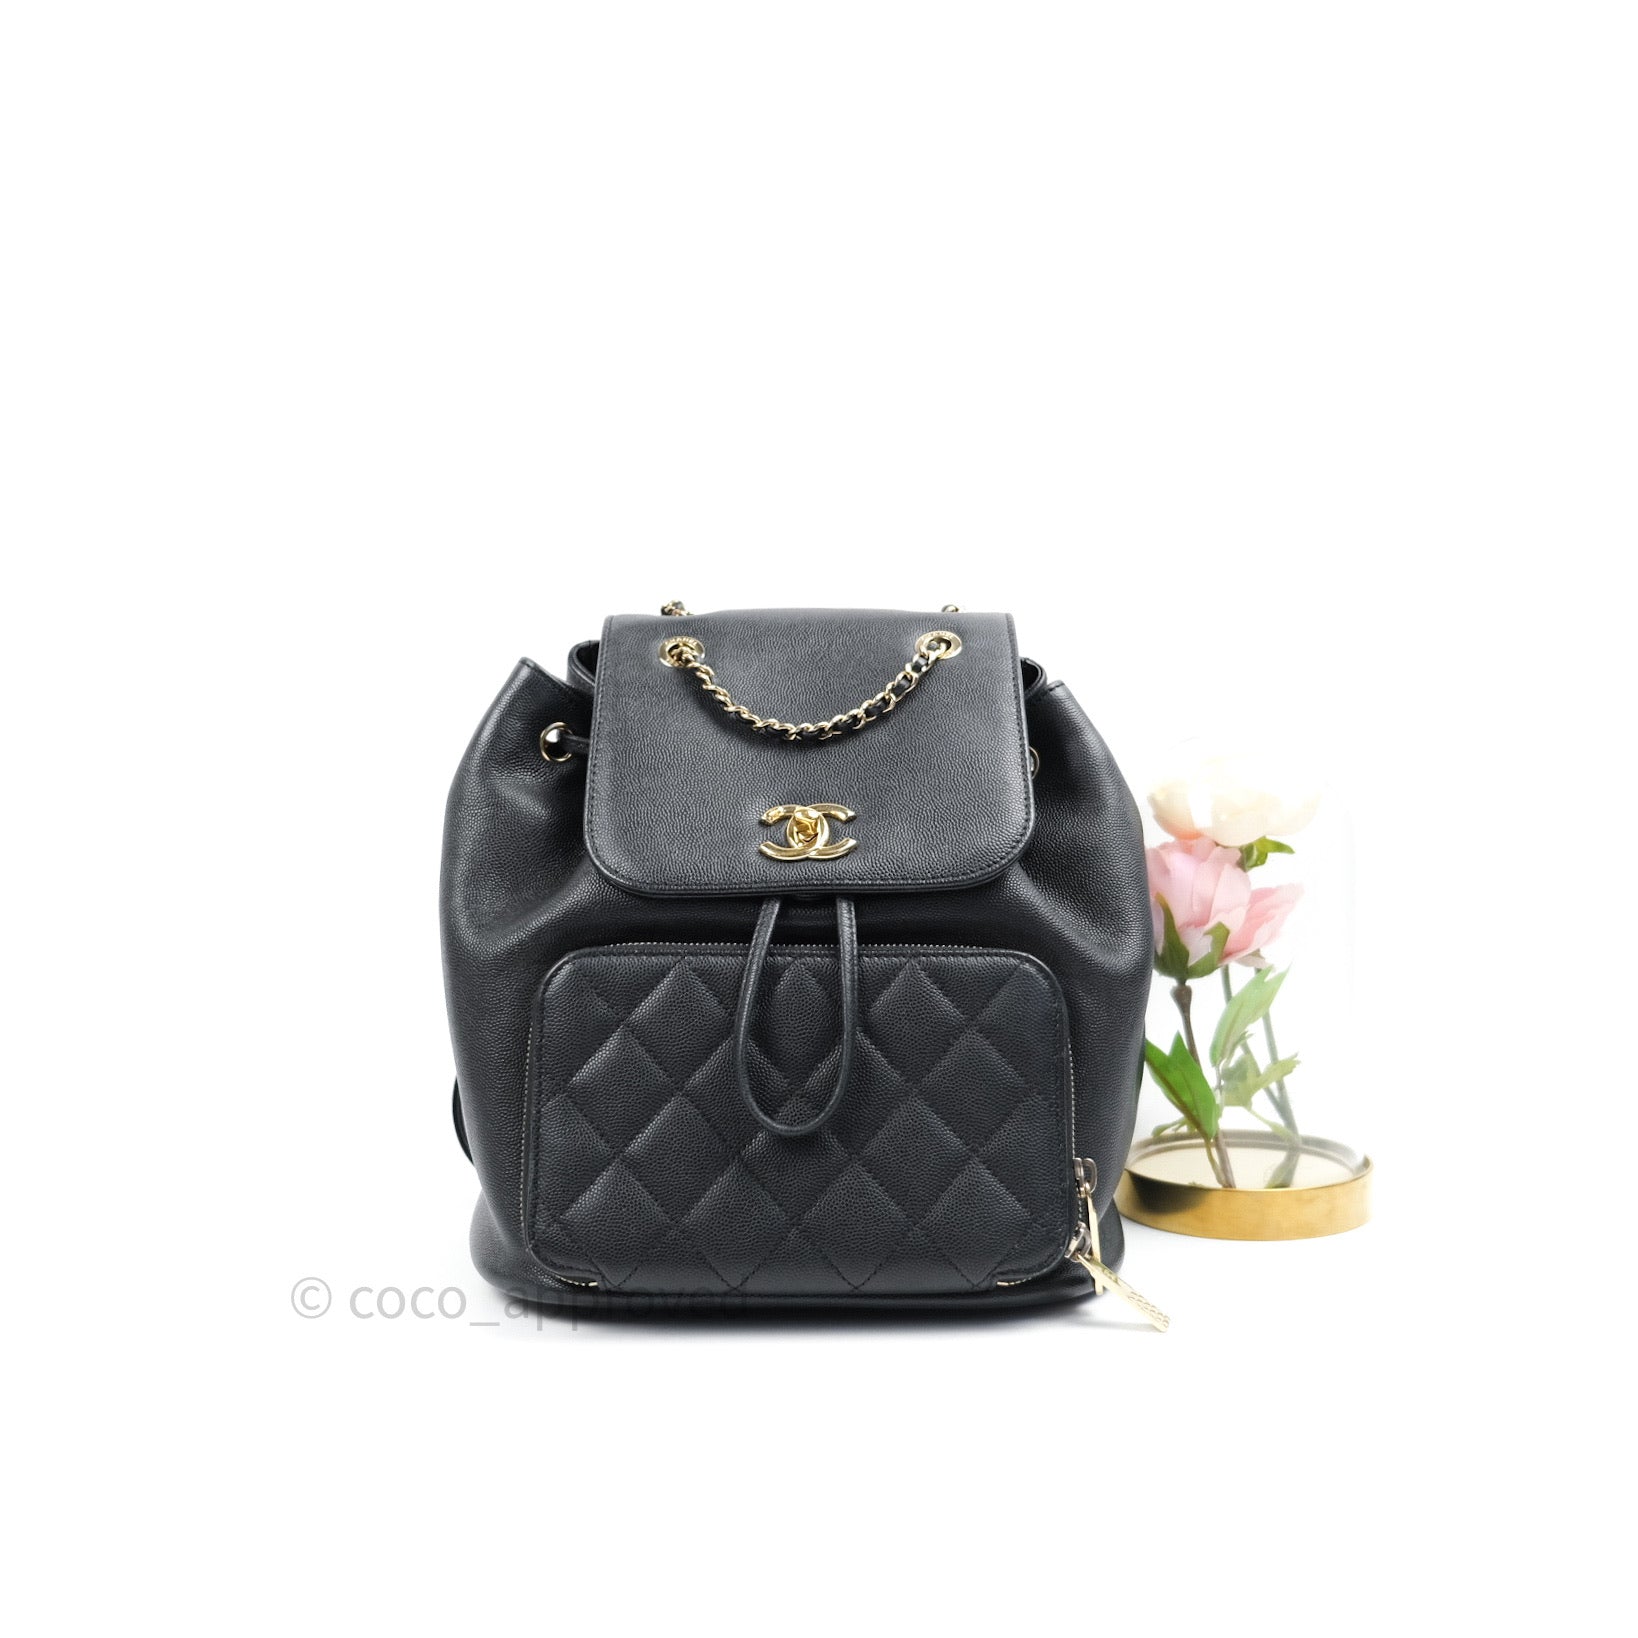 Chanel backpack bag